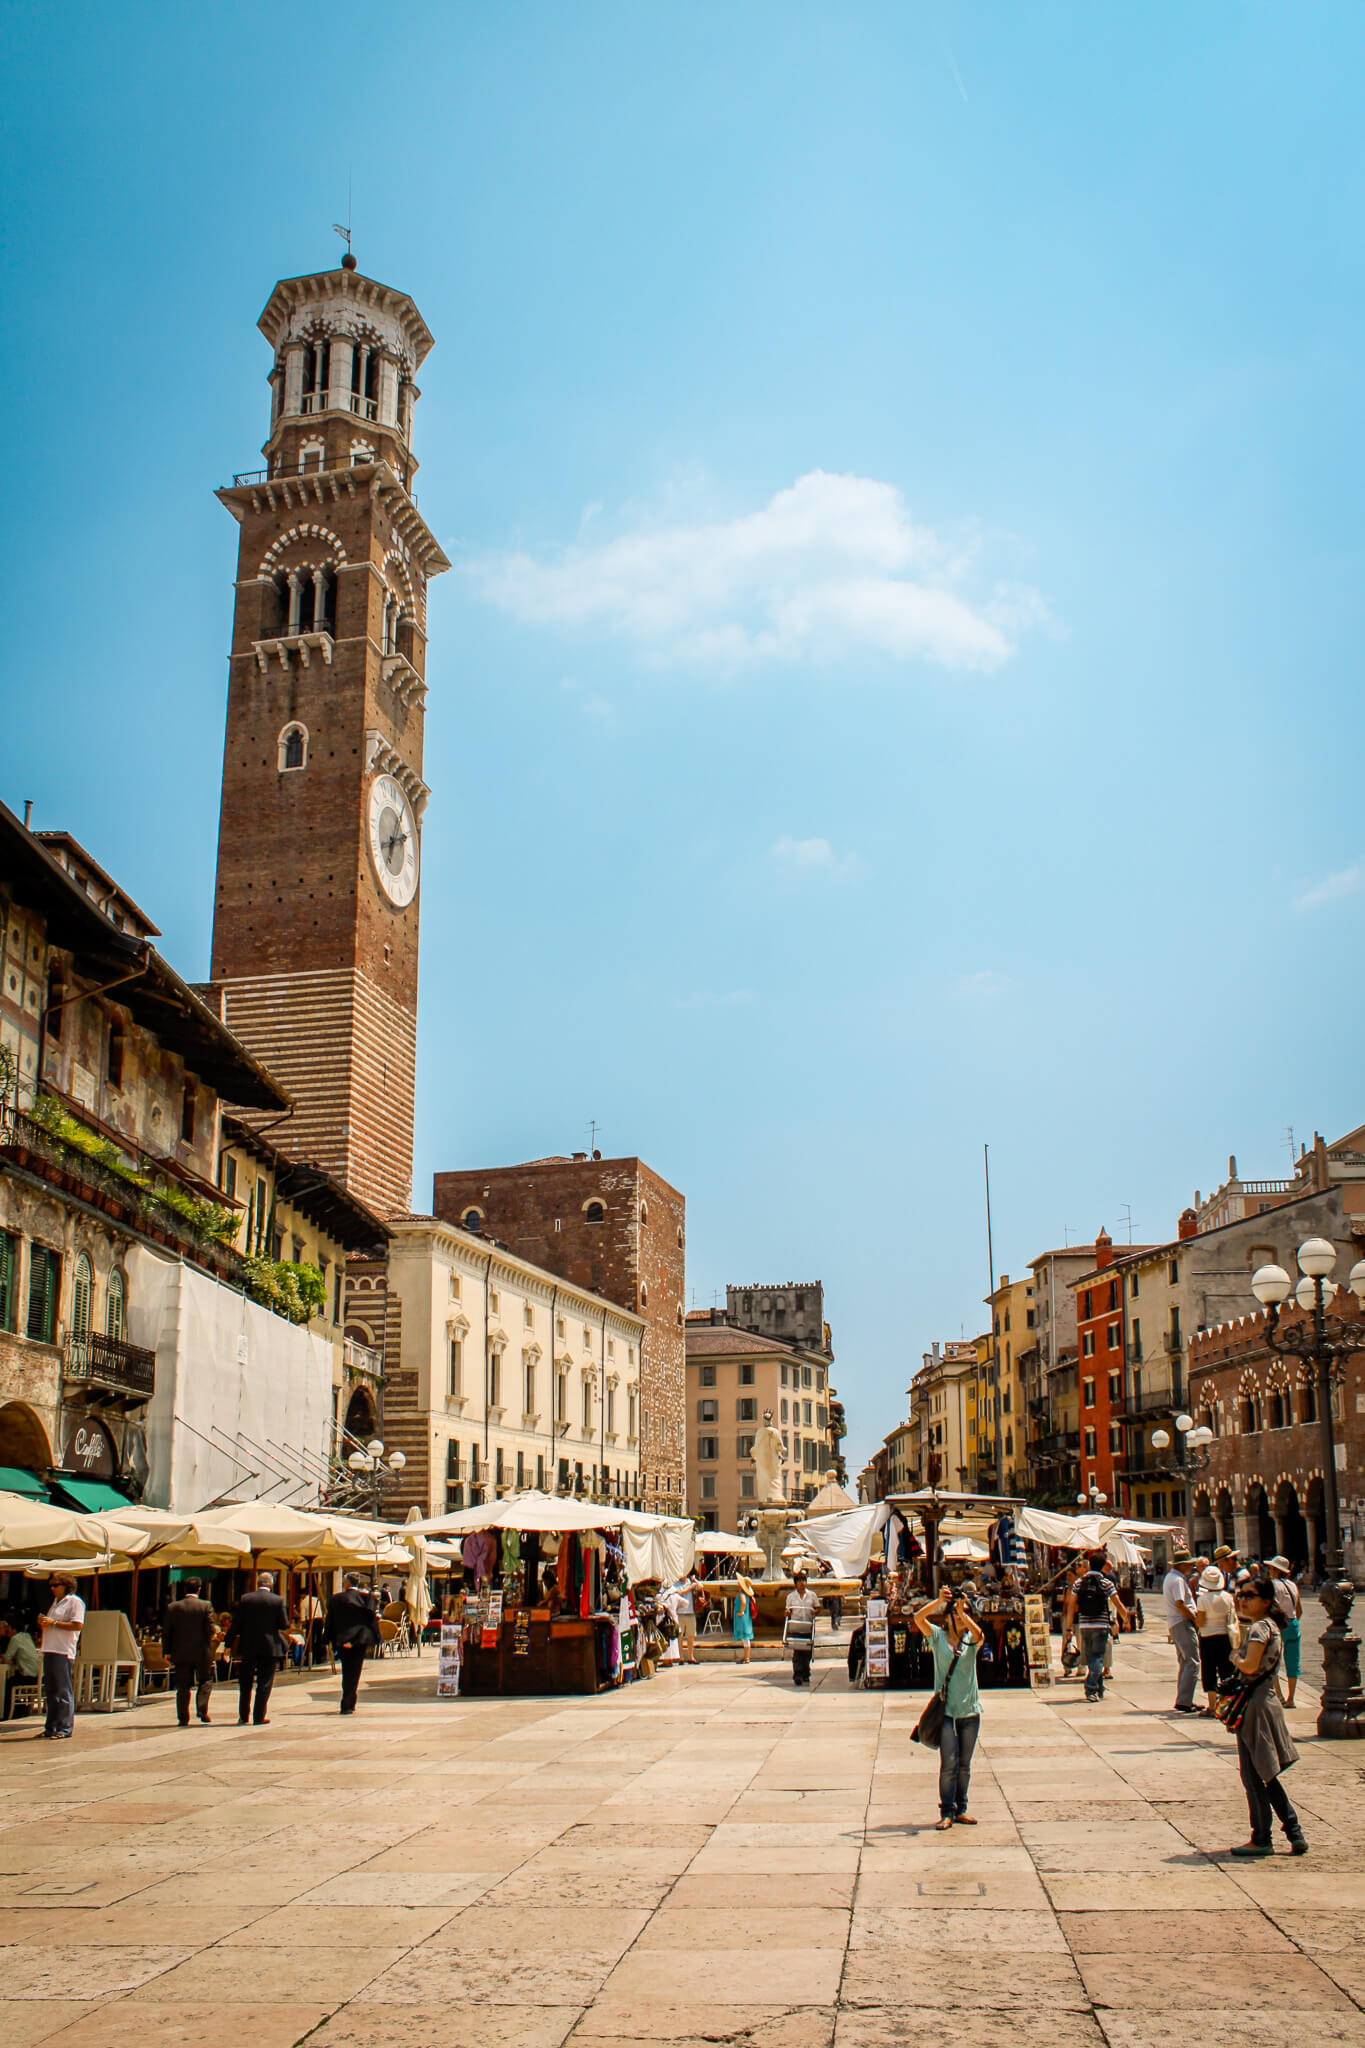 The Torre dei Lamberti in Verona's Piazza delle Erbe